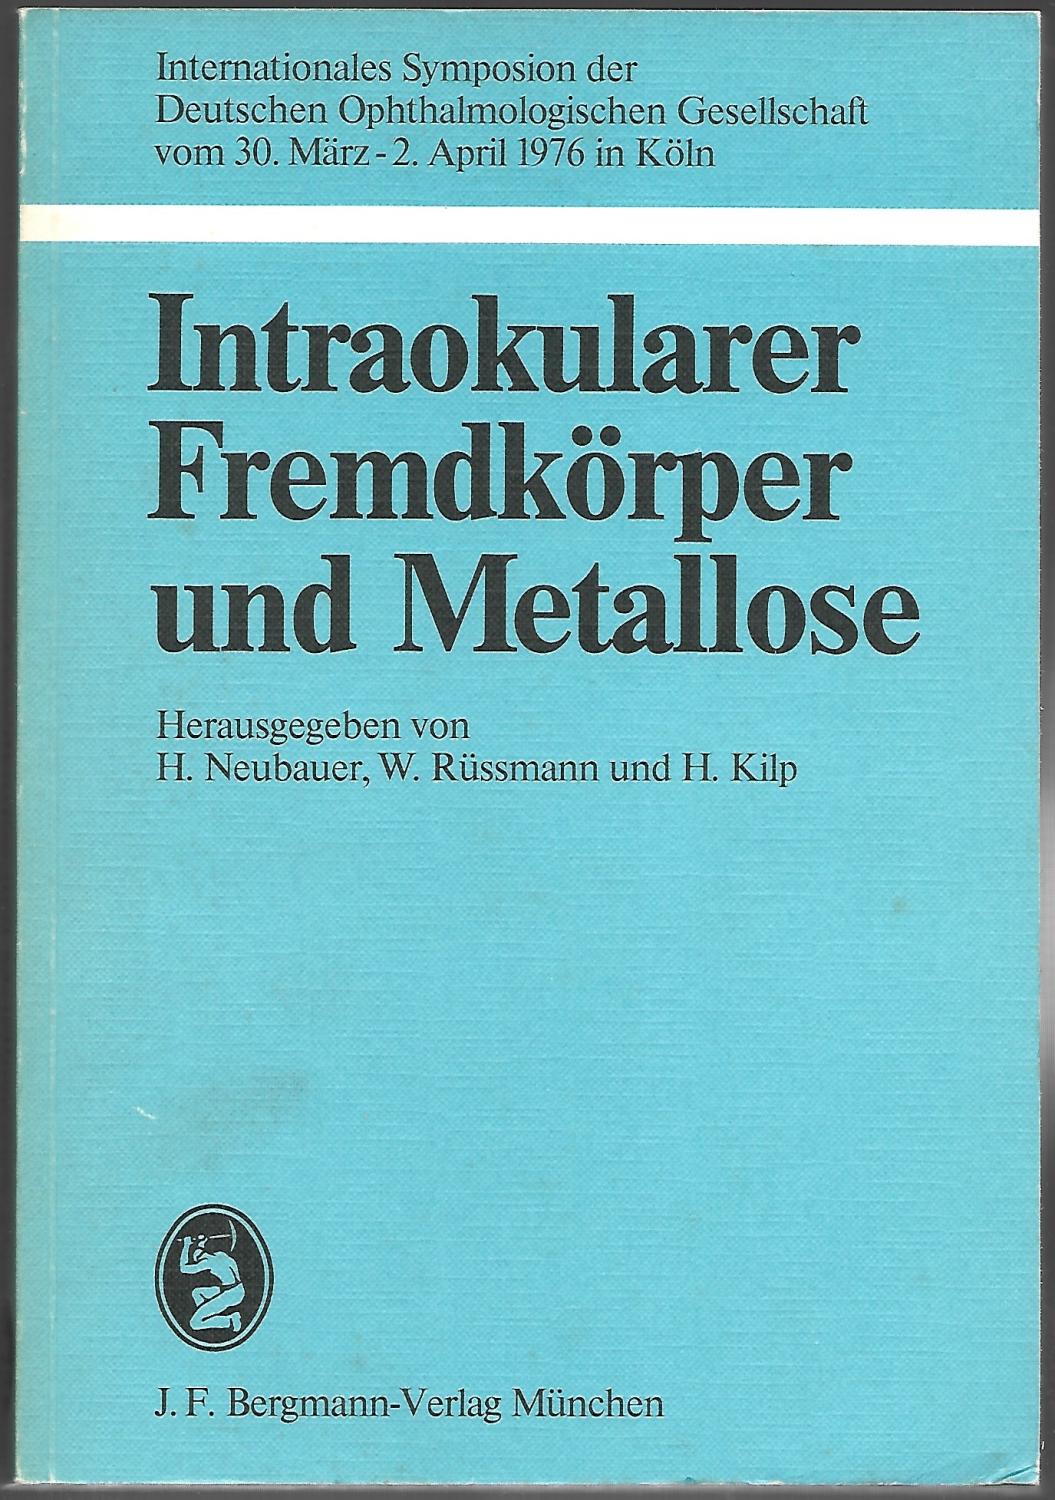 Intraokularer Fremdkörper und Metallose. Internationales Symposion der Deutschen Ophthalmologischen Gesellschaft vom 30. März-2. April 1976 in Köln.